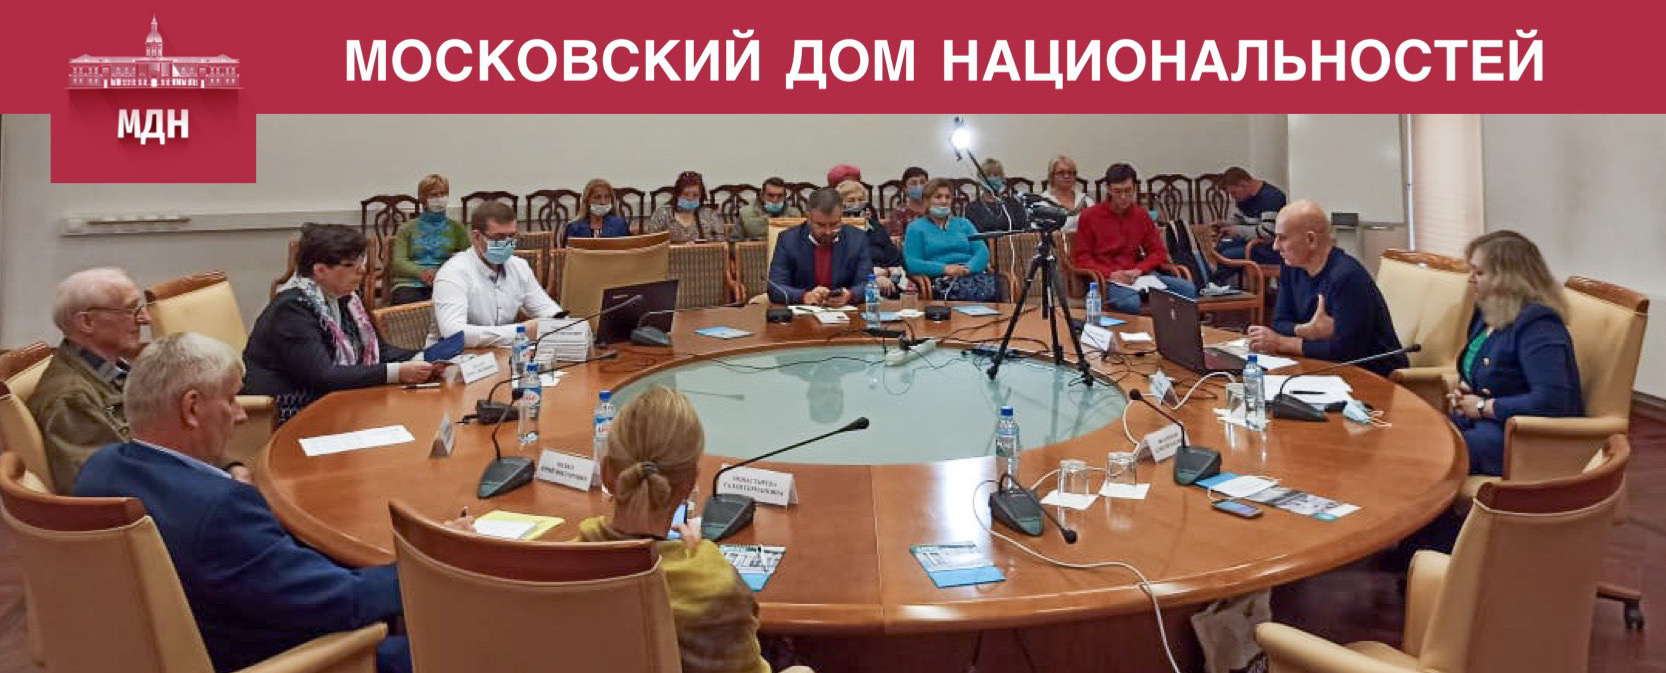 О.В. Солопова приняла участие в семинаре "Миграционная ситуация в городе Москве"